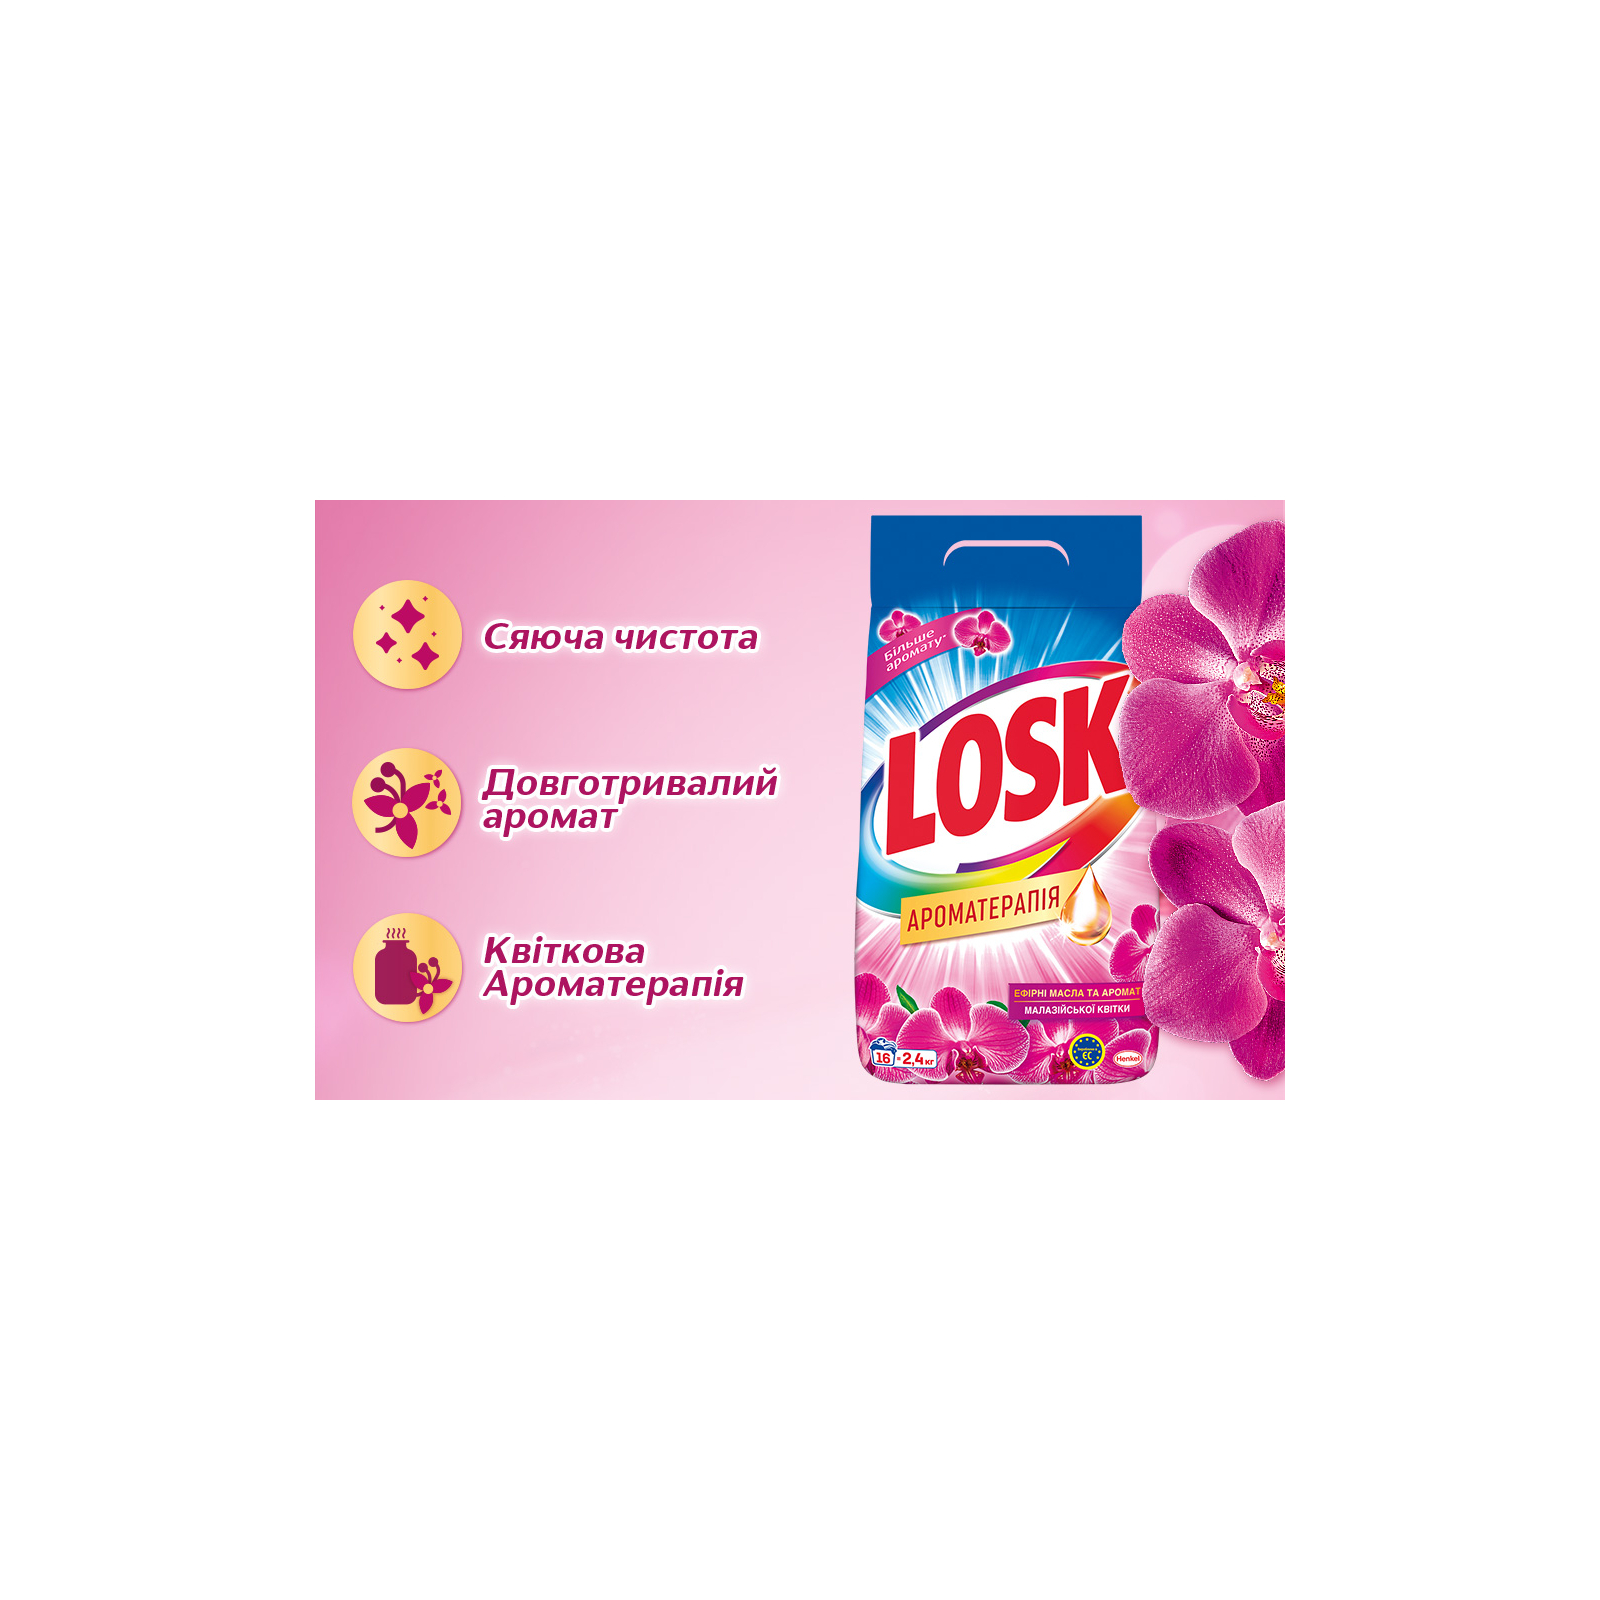 Стиральный порошок Losk автомат аромат Малайзийских цветов 1.2 кг (9000101412796/9000101520262) изображение 2